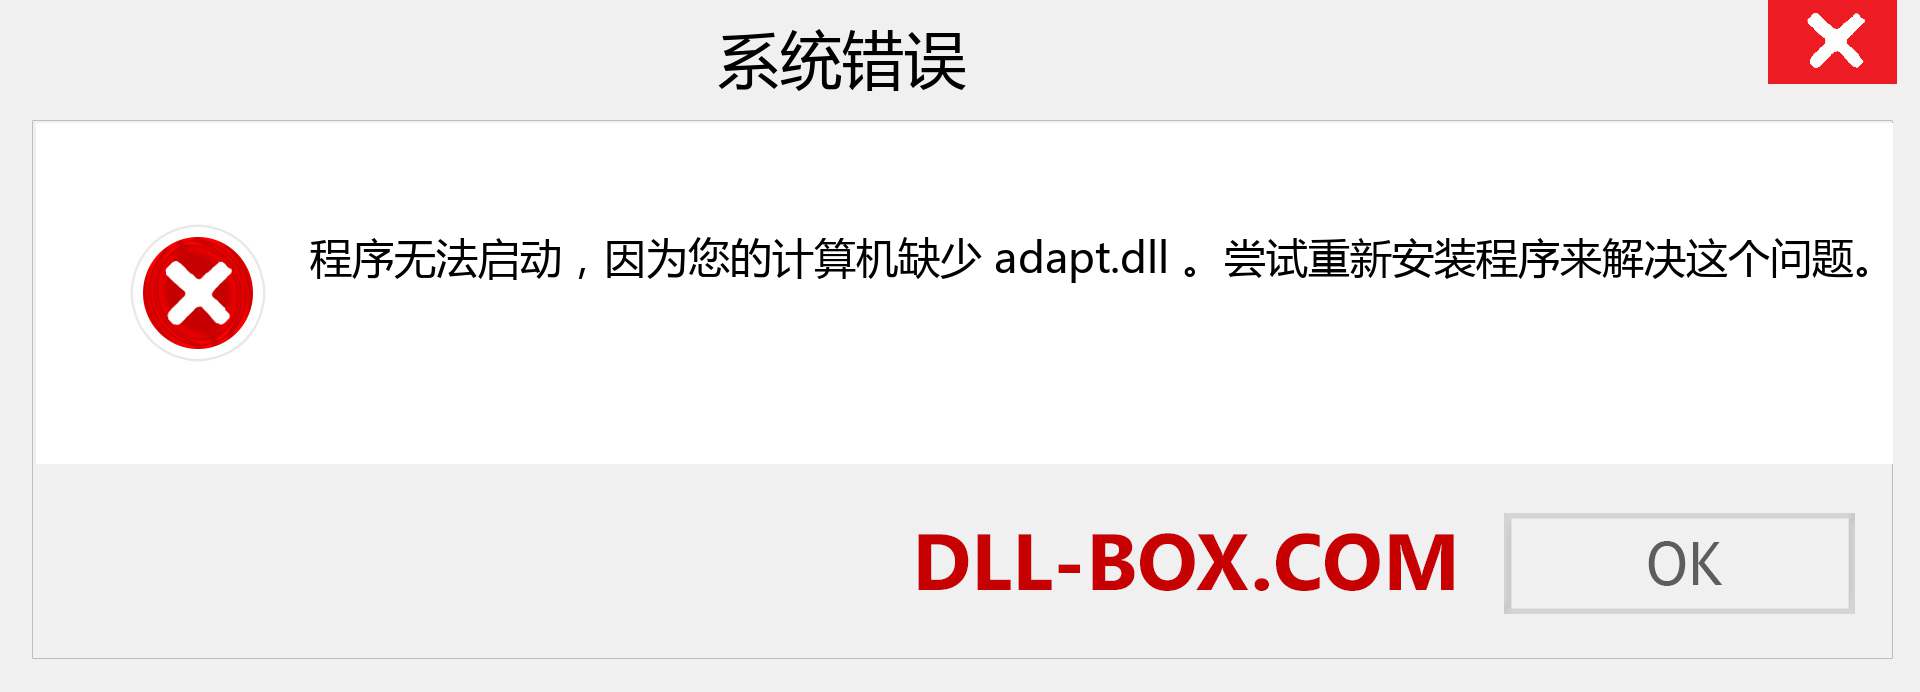 adapt.dll 文件丢失？。 适用于 Windows 7、8、10 的下载 - 修复 Windows、照片、图像上的 adapt dll 丢失错误